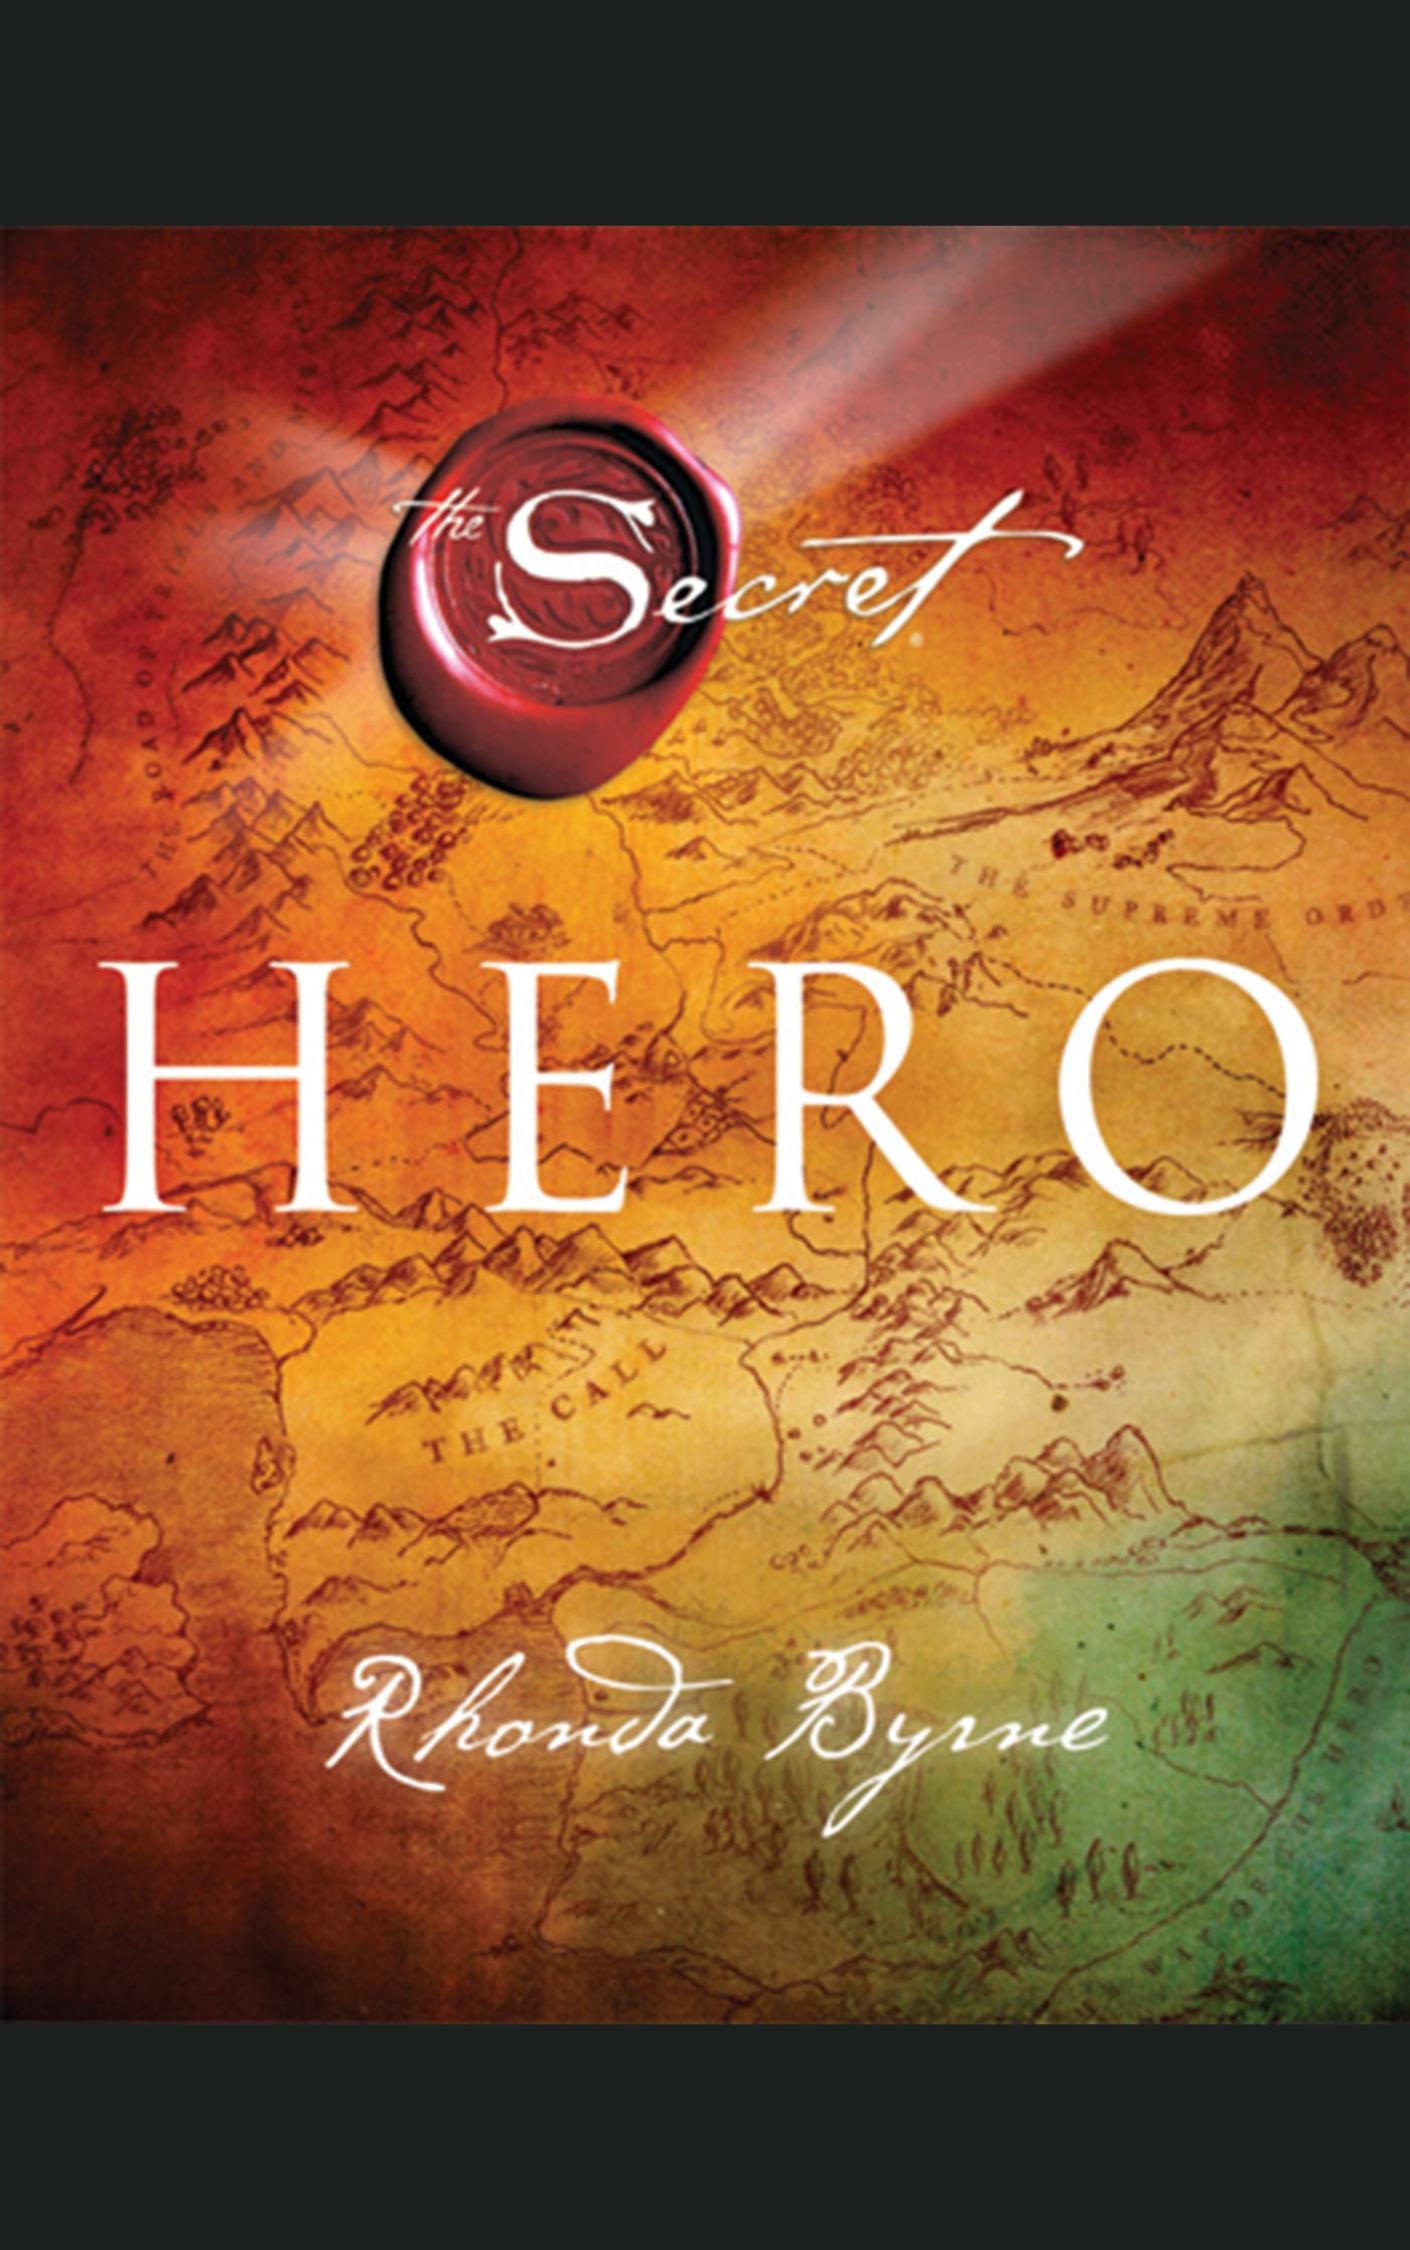 THE HERO by RHONDA BYRNE